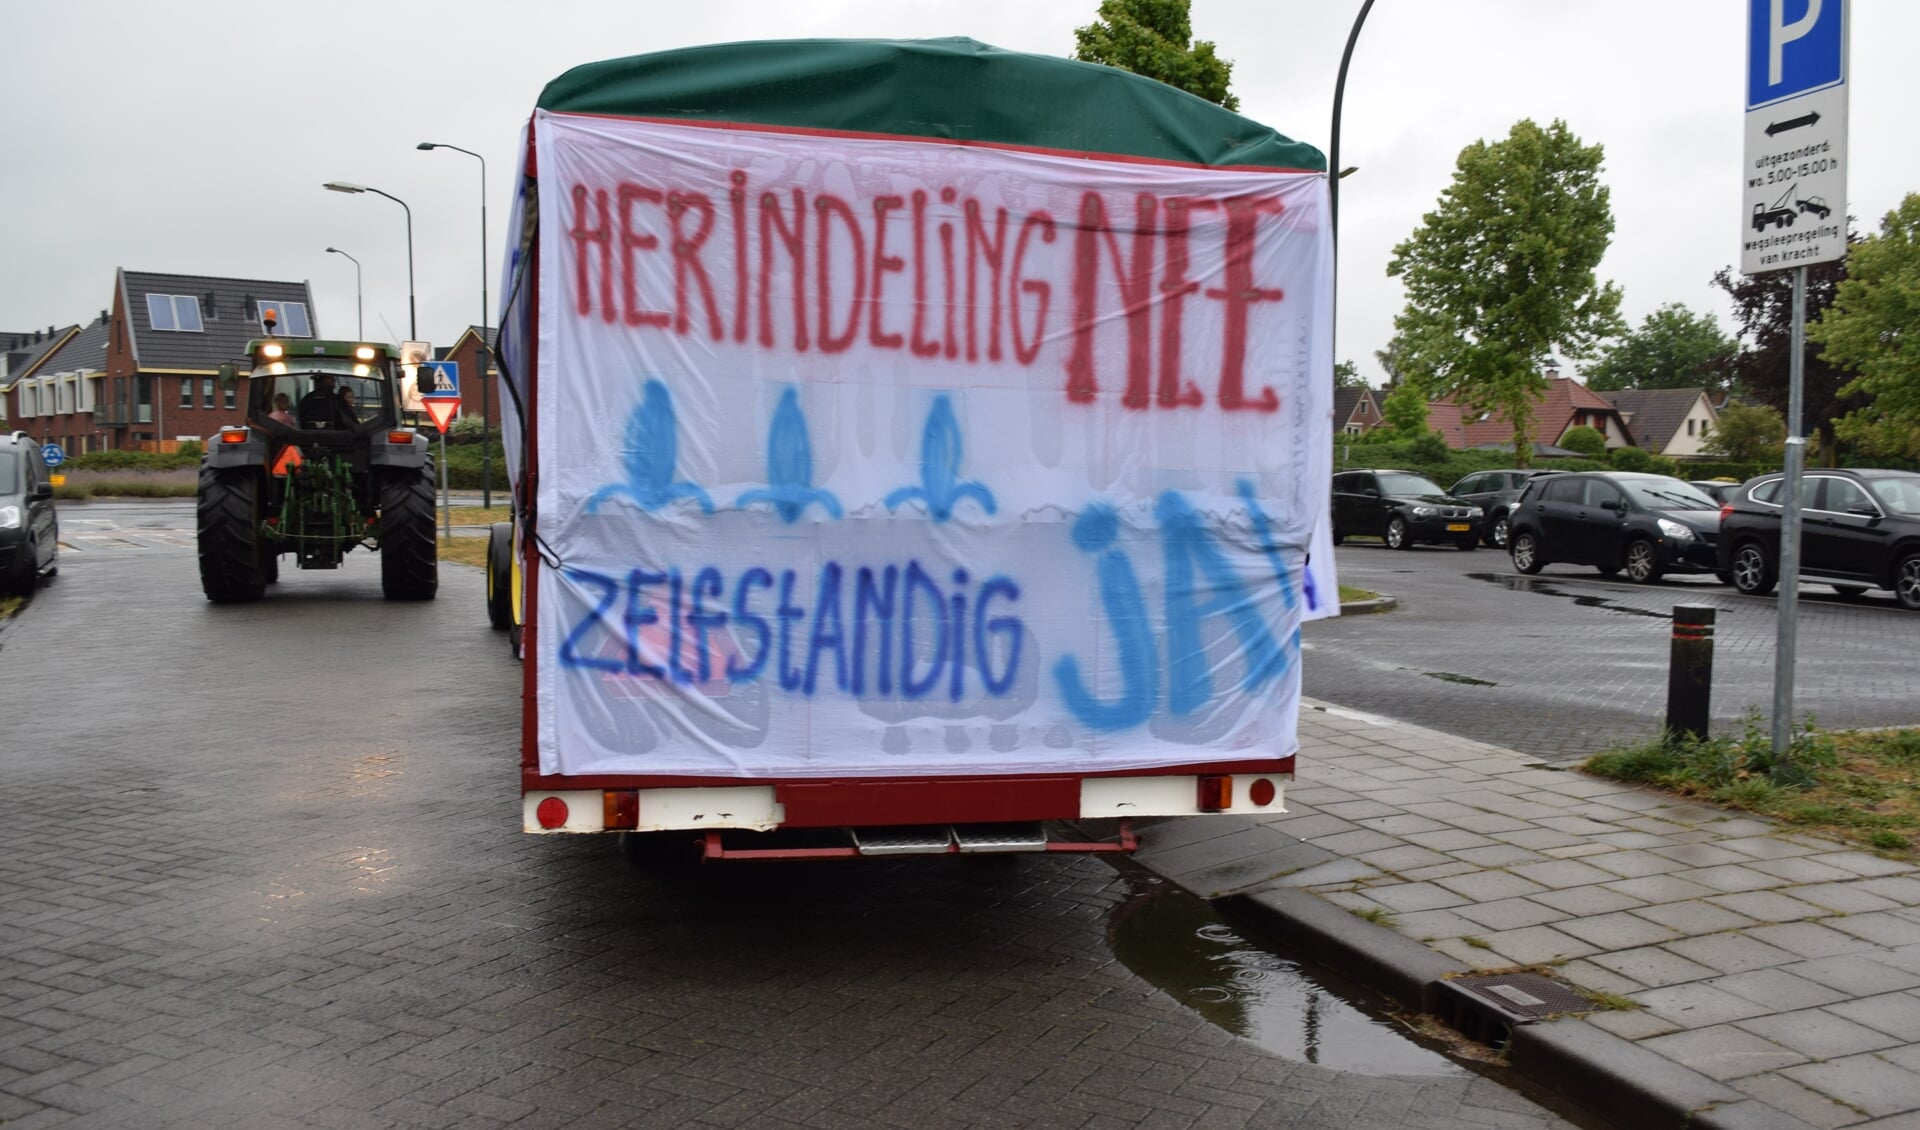 Inwoners van Scherpenzeel protesteerden eerder dit jaar tegen de mogelijke herindeling.